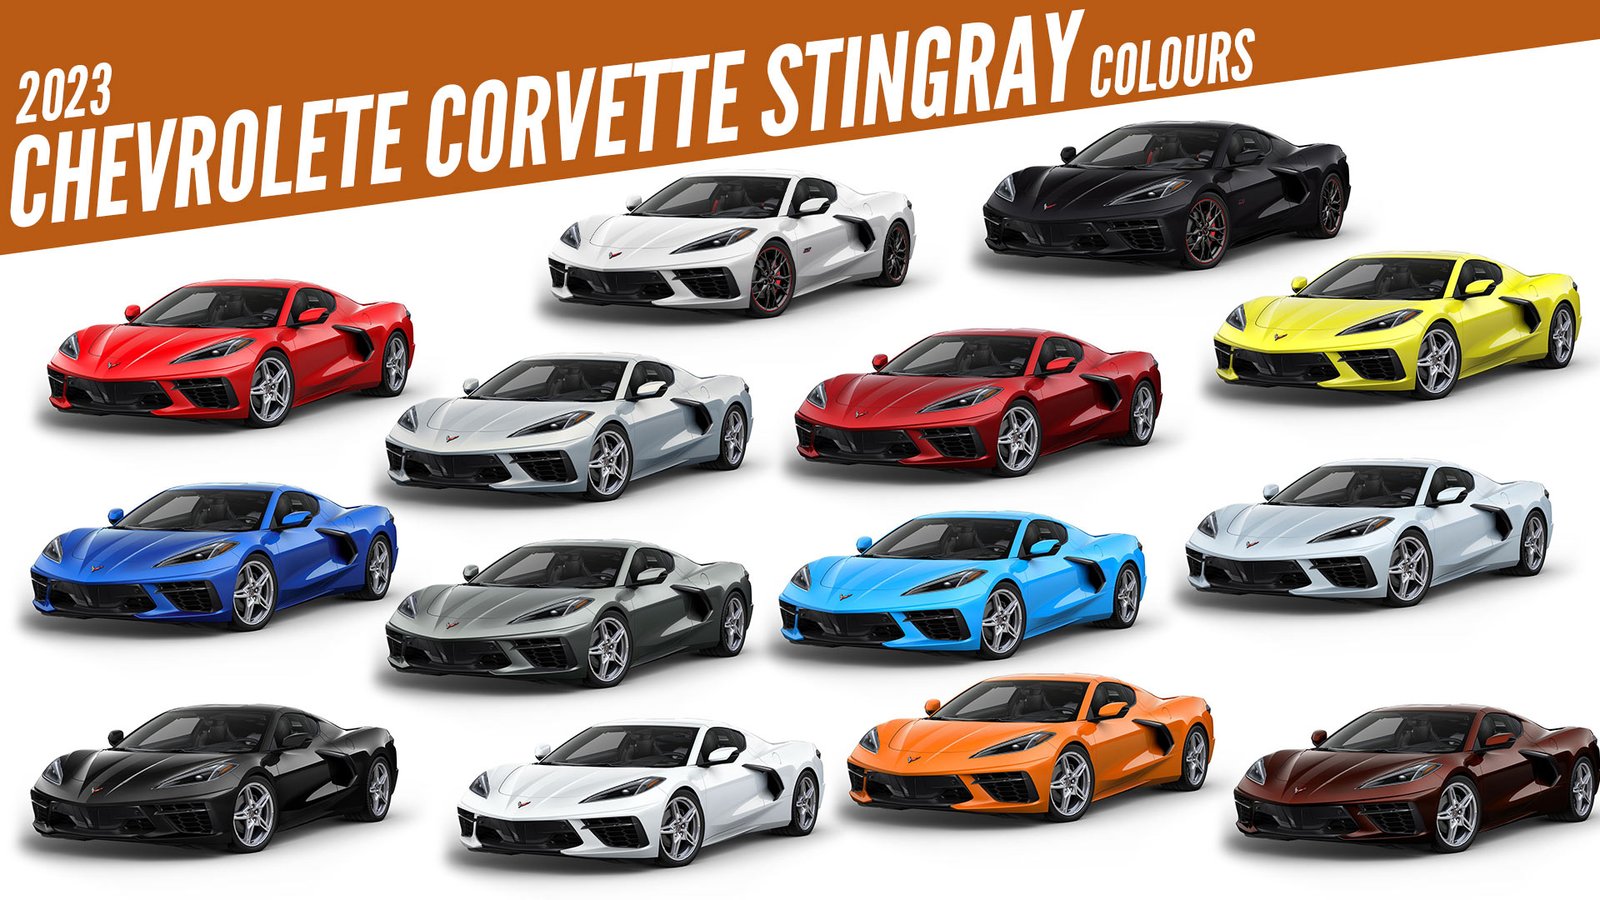 2023 Chevrolet Corvette Stingray All Color Options Images AUTOBICS